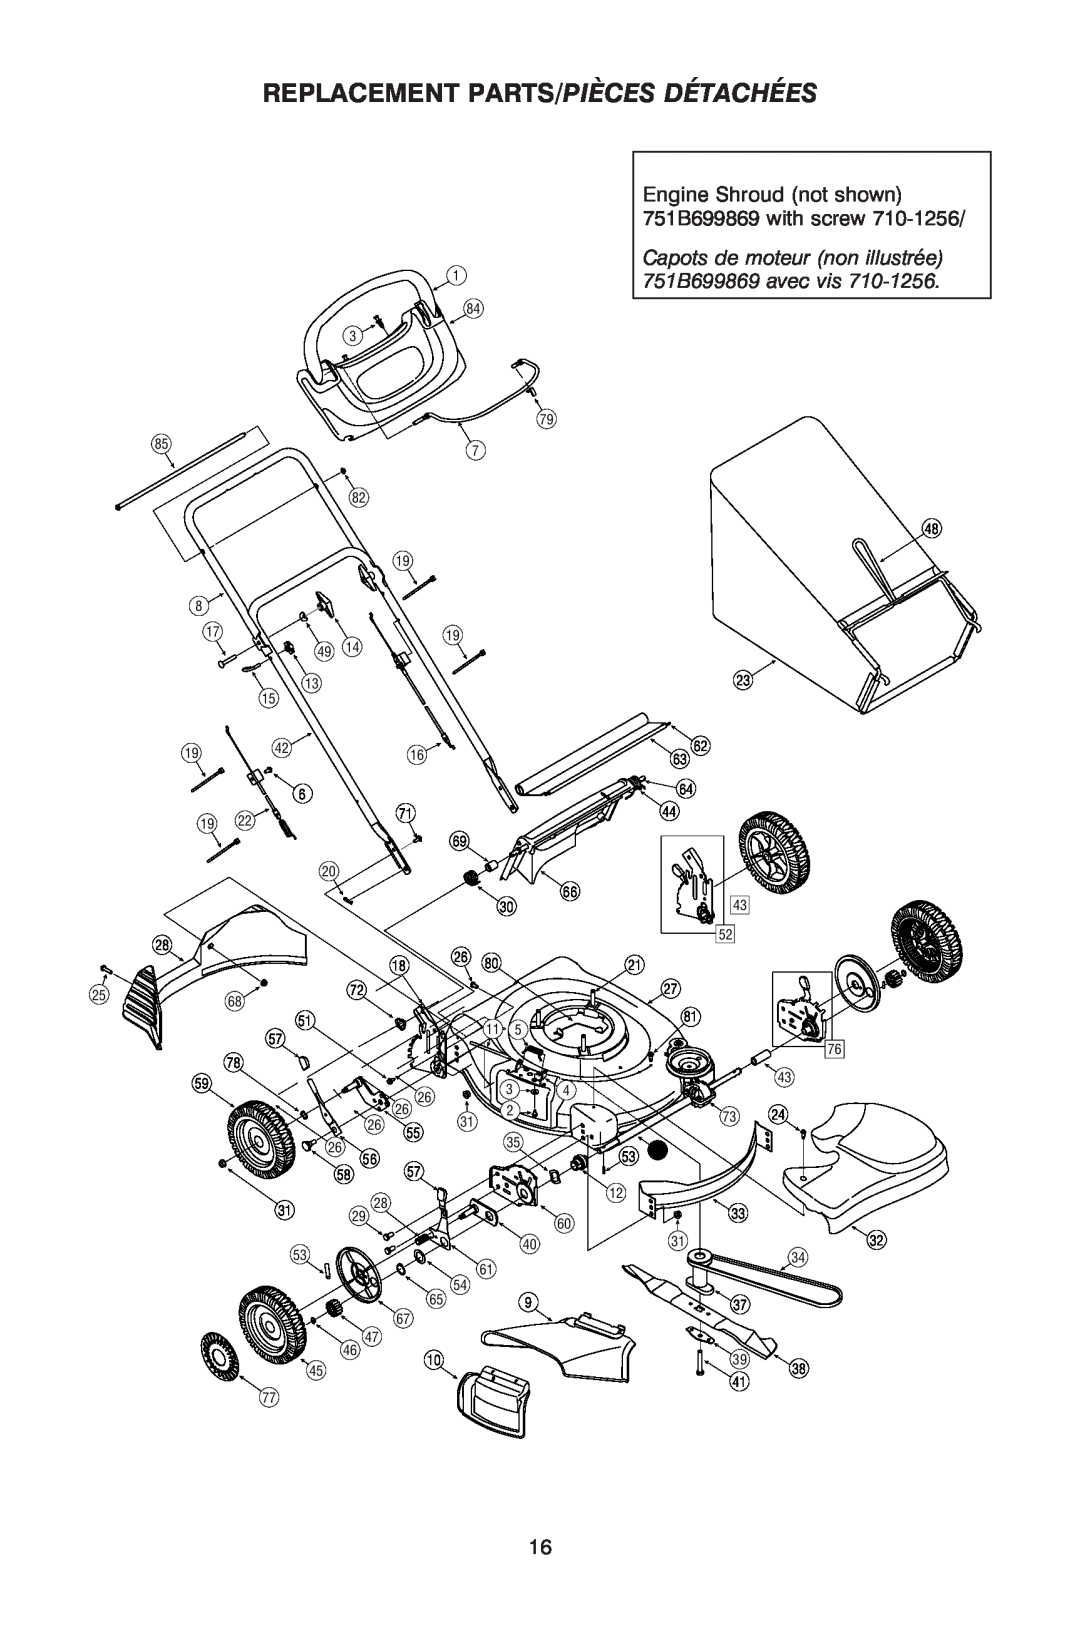 Troy-Bilt OG-4605 Replacement Parts/Pièces Détachées, Capots de moteur non illustrée 751B699869 avec vis, 1942, 1880 